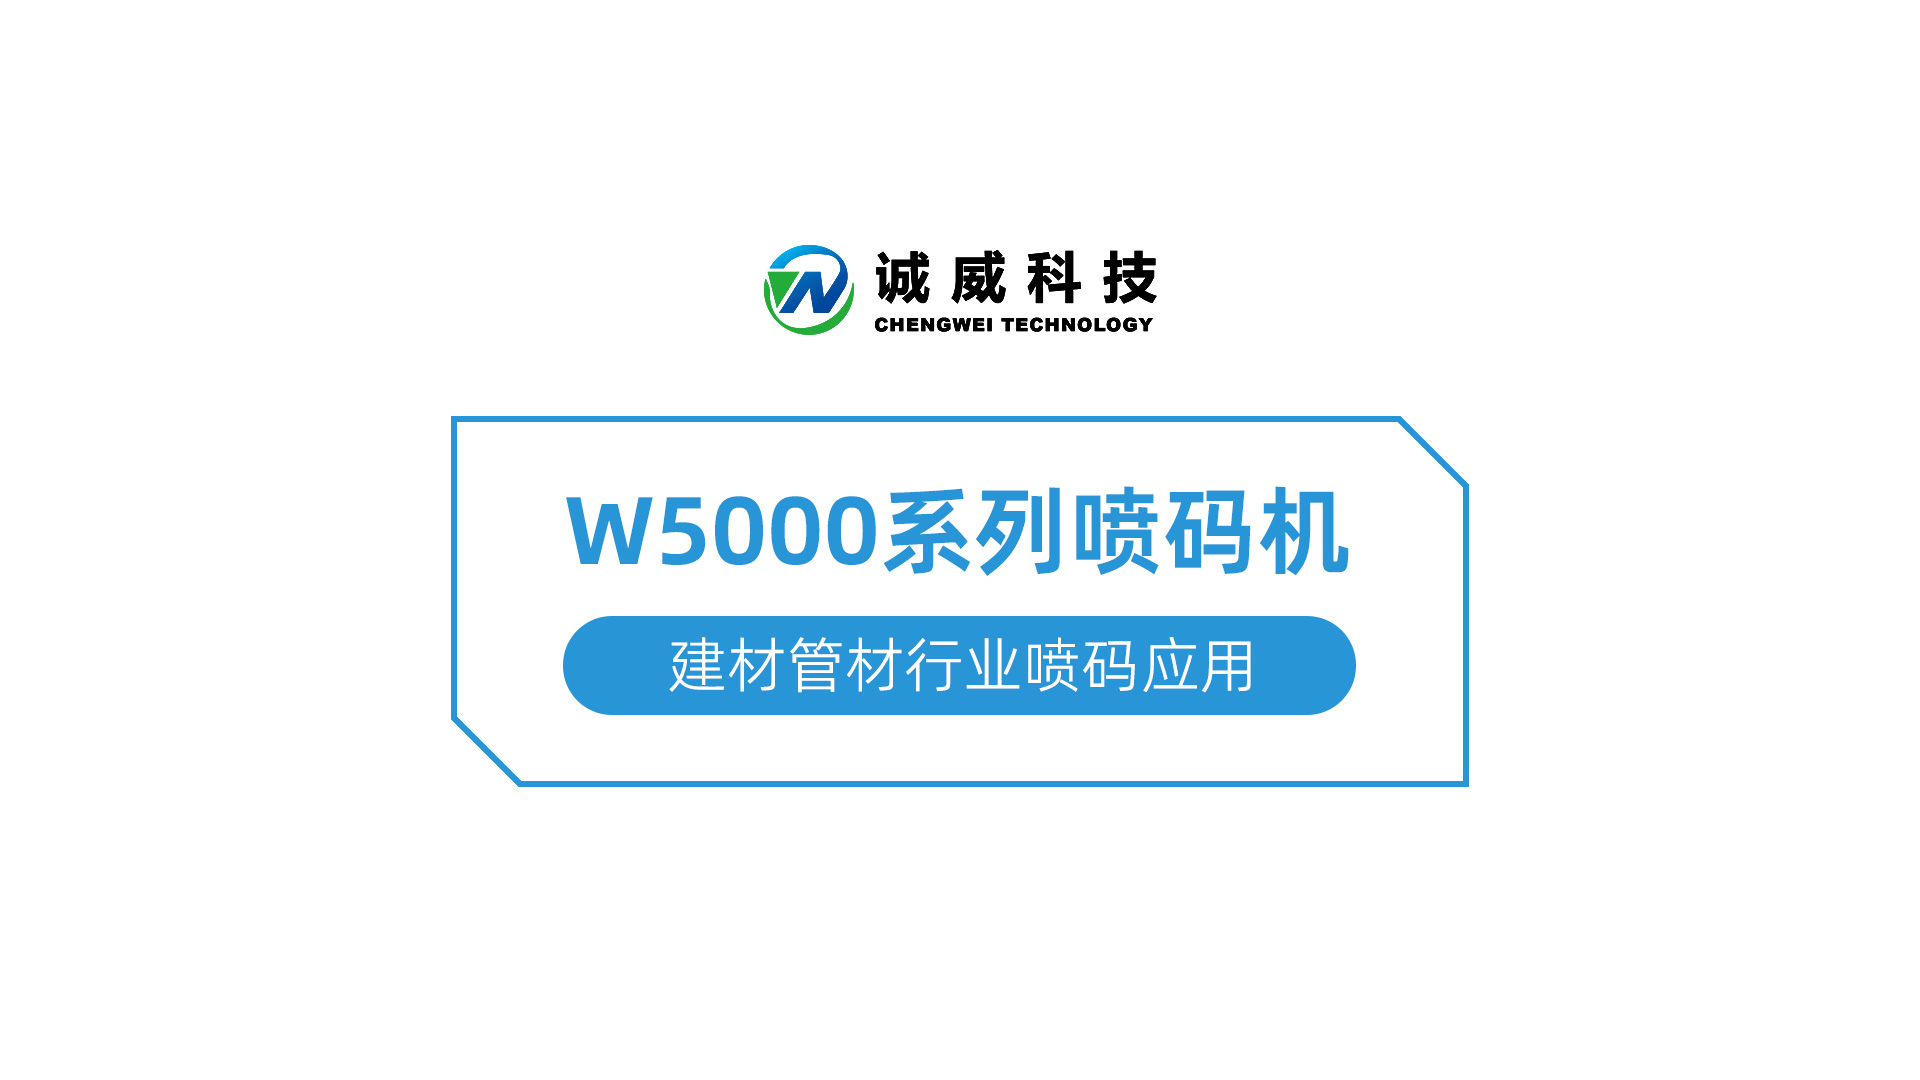 W5000系列喷码机-建材管材行业喷码应用.jpg